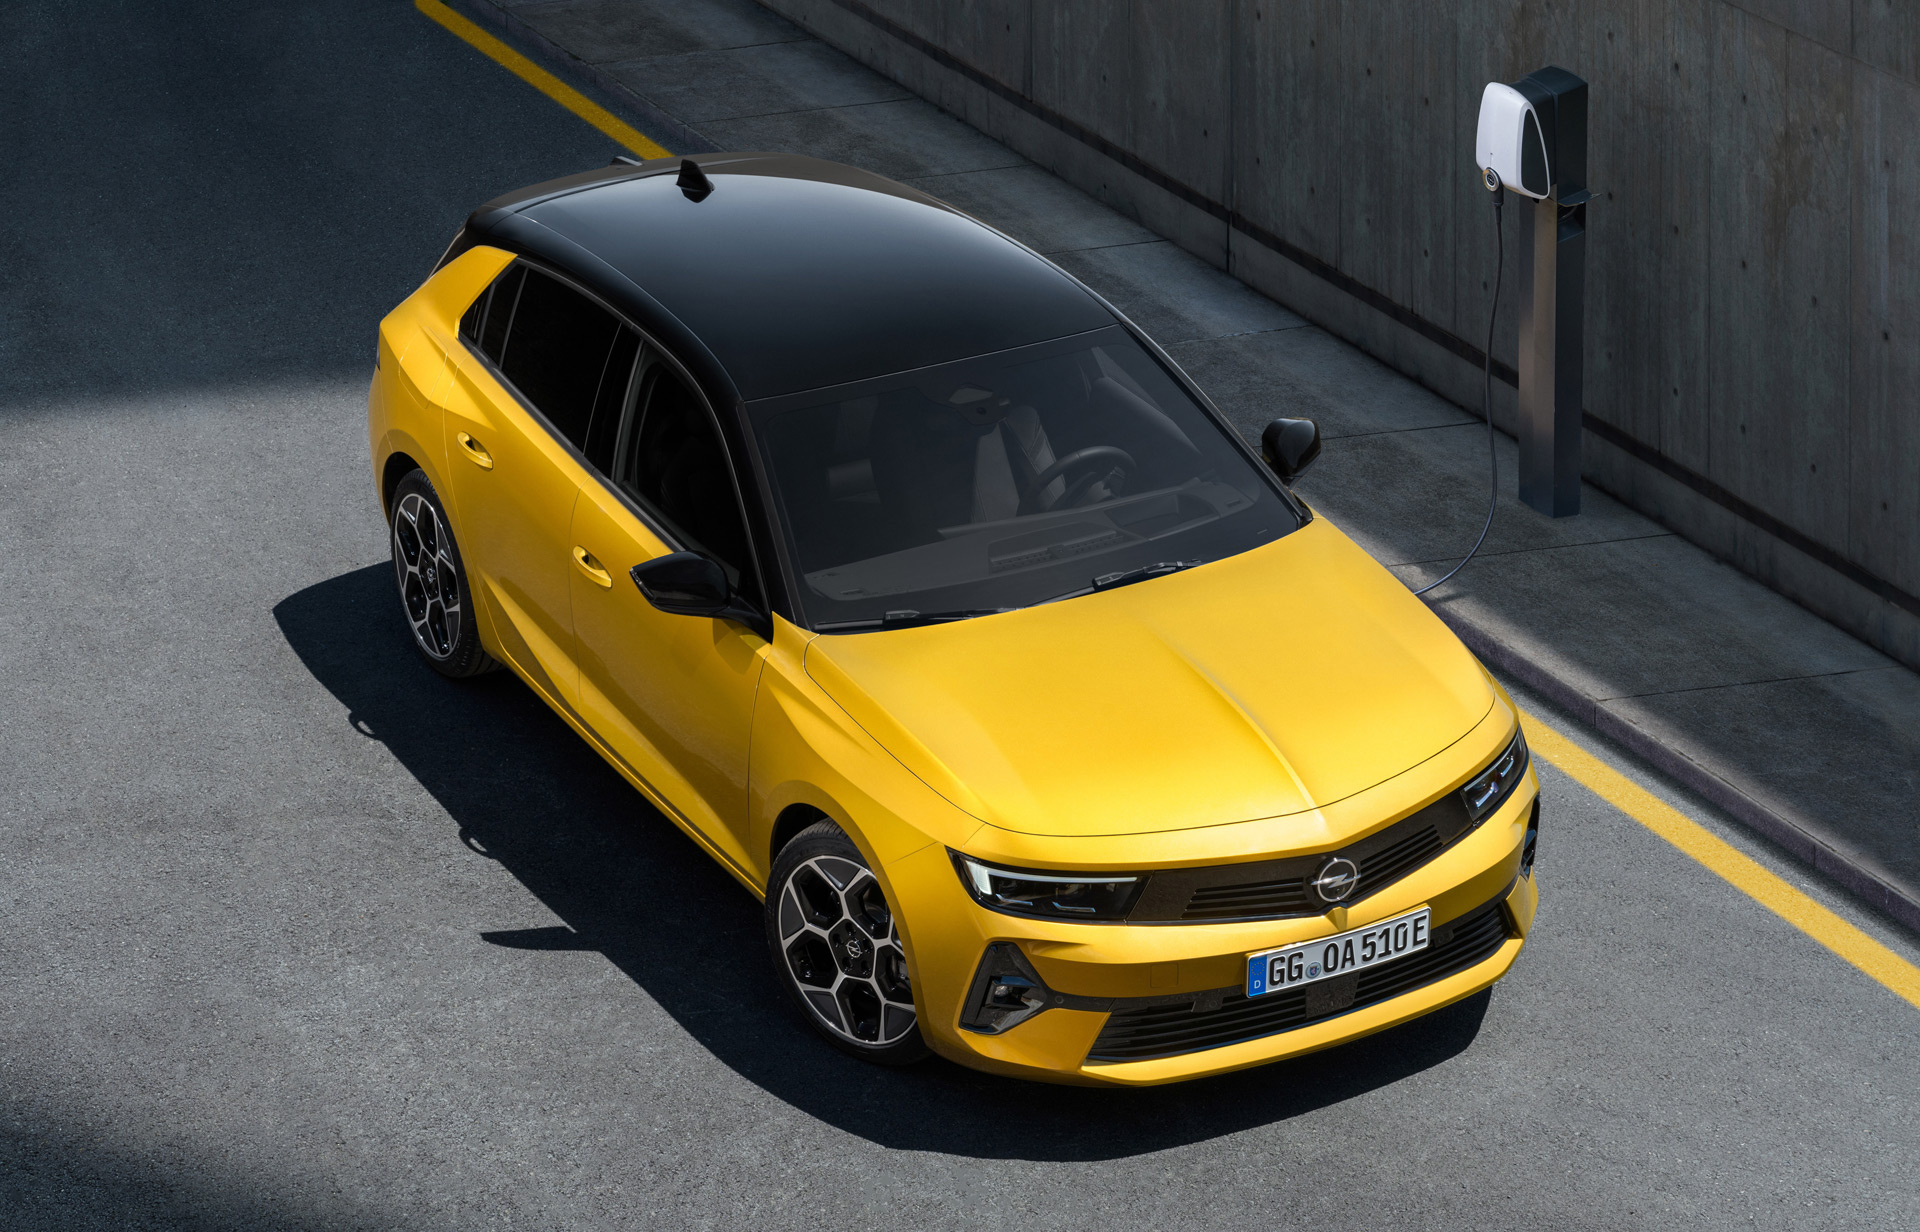 Opel Astra, Top-notch wallpapers, Fresh design, Enhanced features, 1920x1240 HD Desktop